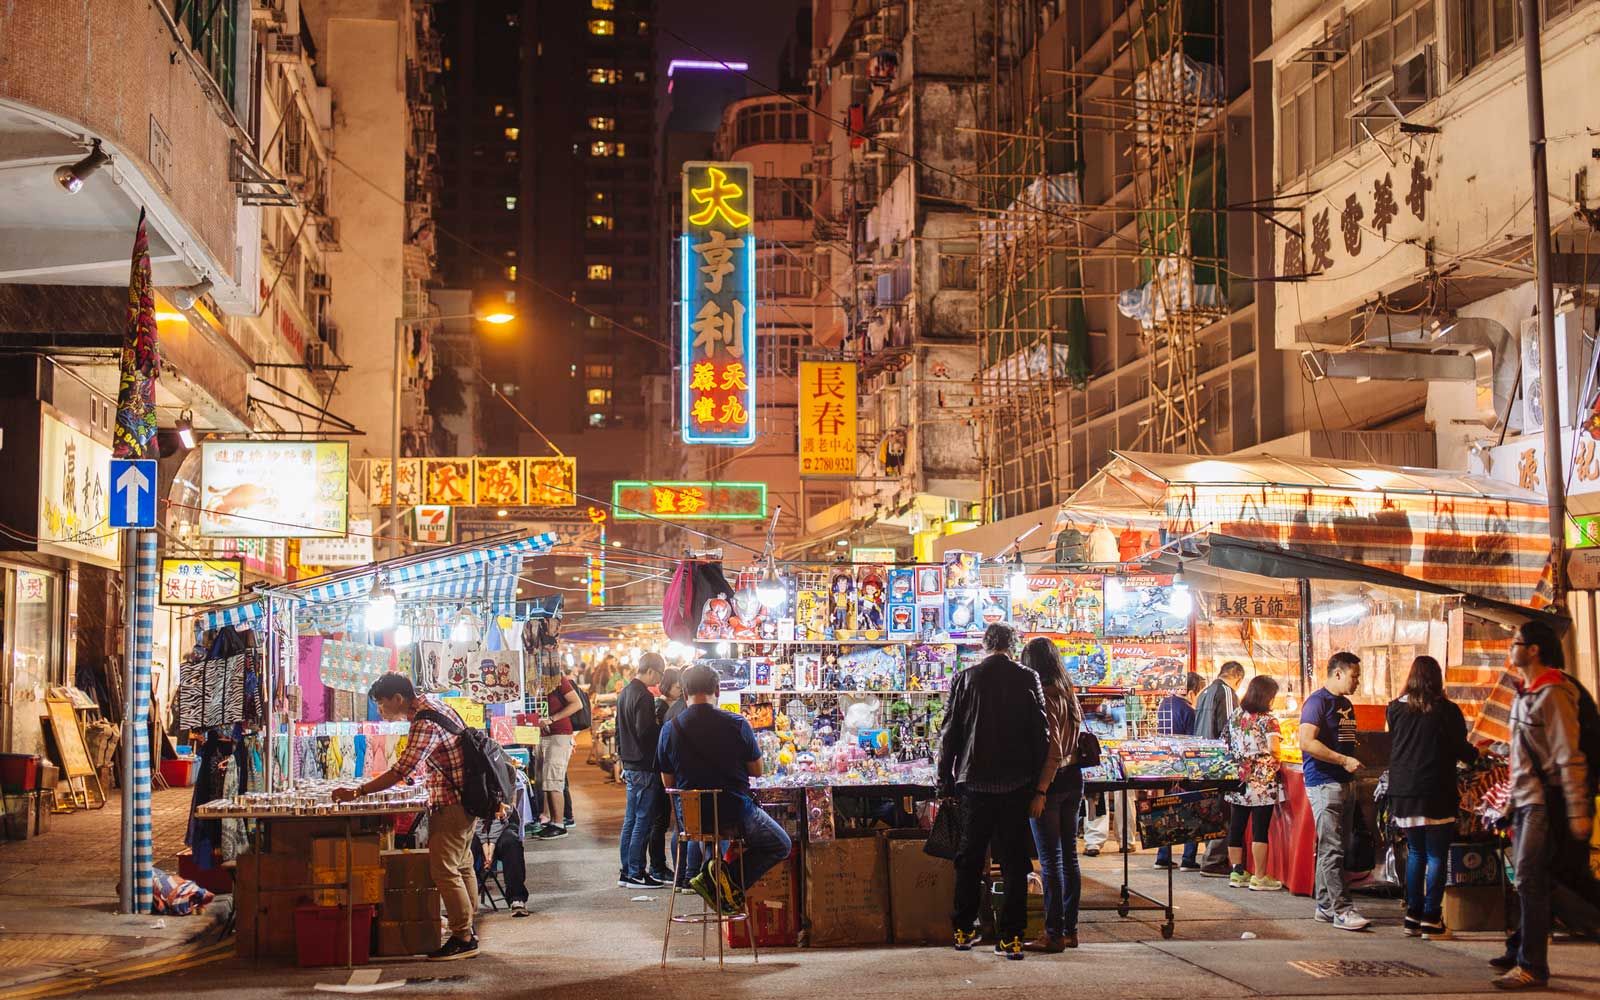 템플 스트리트 야시장, 홍콩, 중국에서 관광객